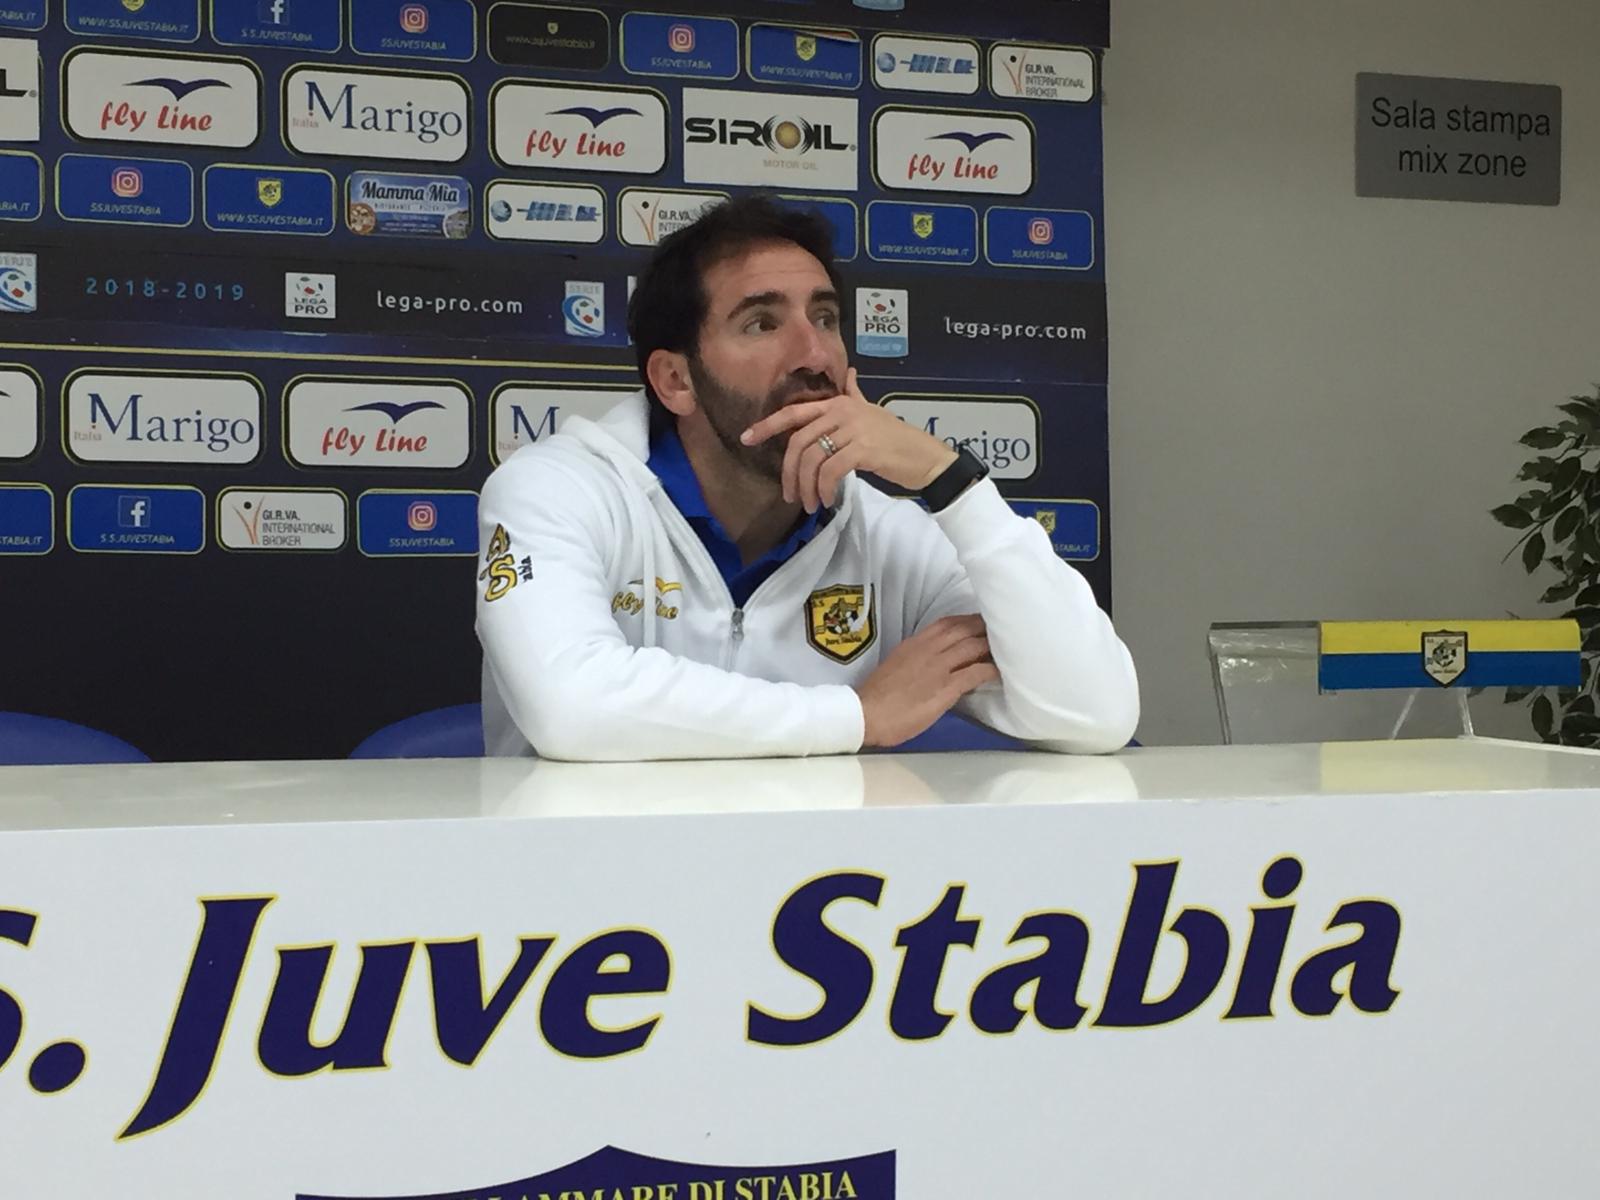 Caserta, Juve Stabia: ‘Non guardo la classifica. Calciomercato? Sono contento di questa rosa’